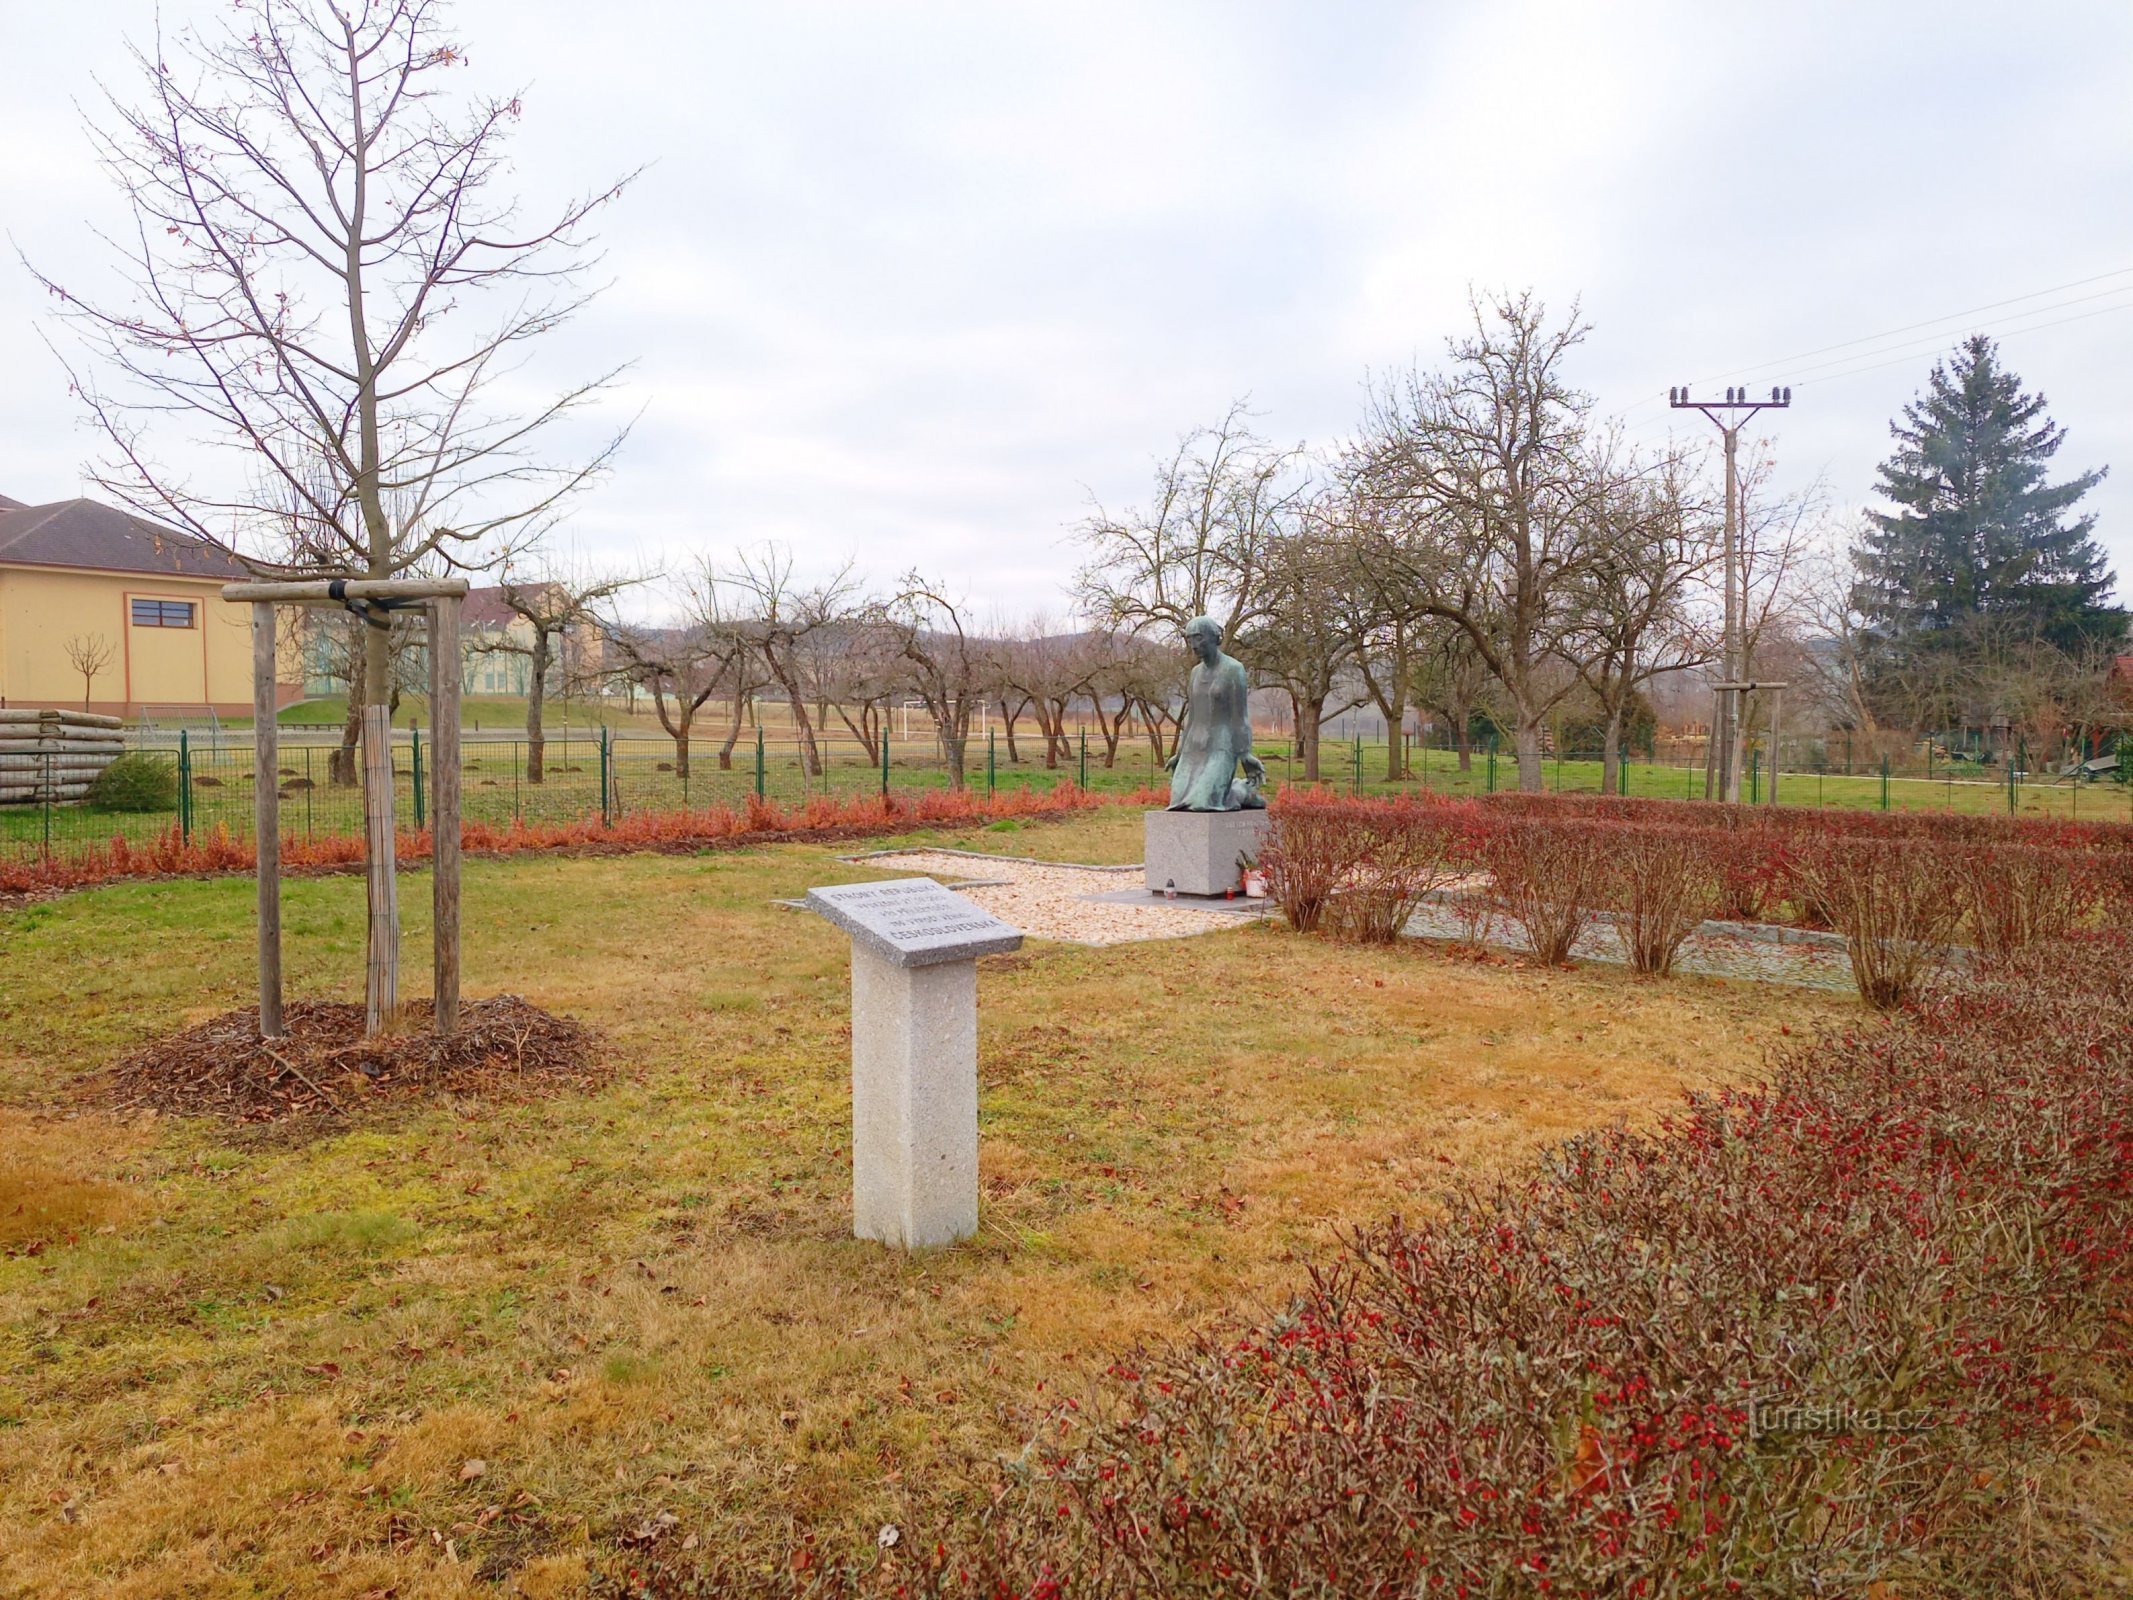 2. Monument till krigets offer i Sedlec